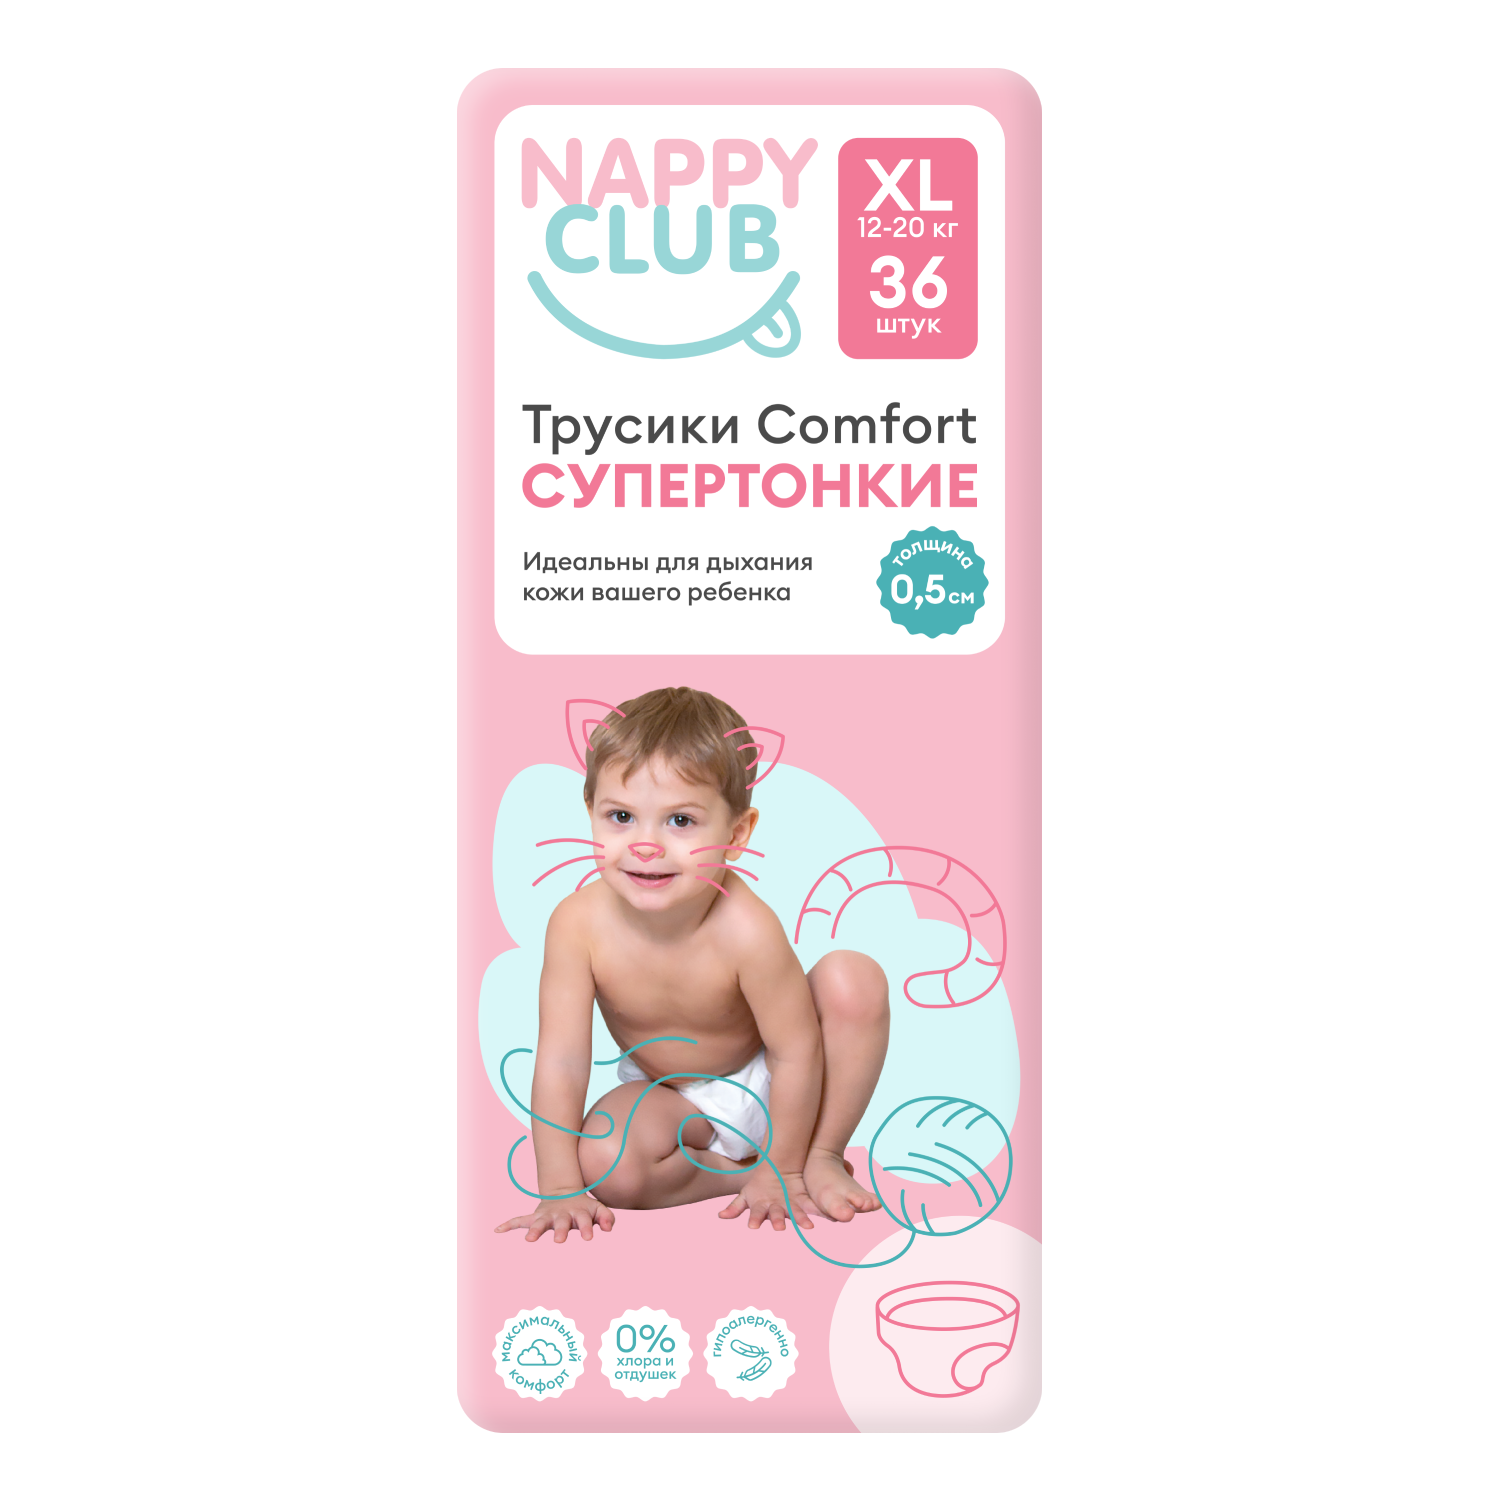 NappyClub трусики Comfort дневные супер-тонкие XL (12-20 кг) 36 шт. nappyclub трусики premium дневные супер тонкие m 6 11 кг 54 шт